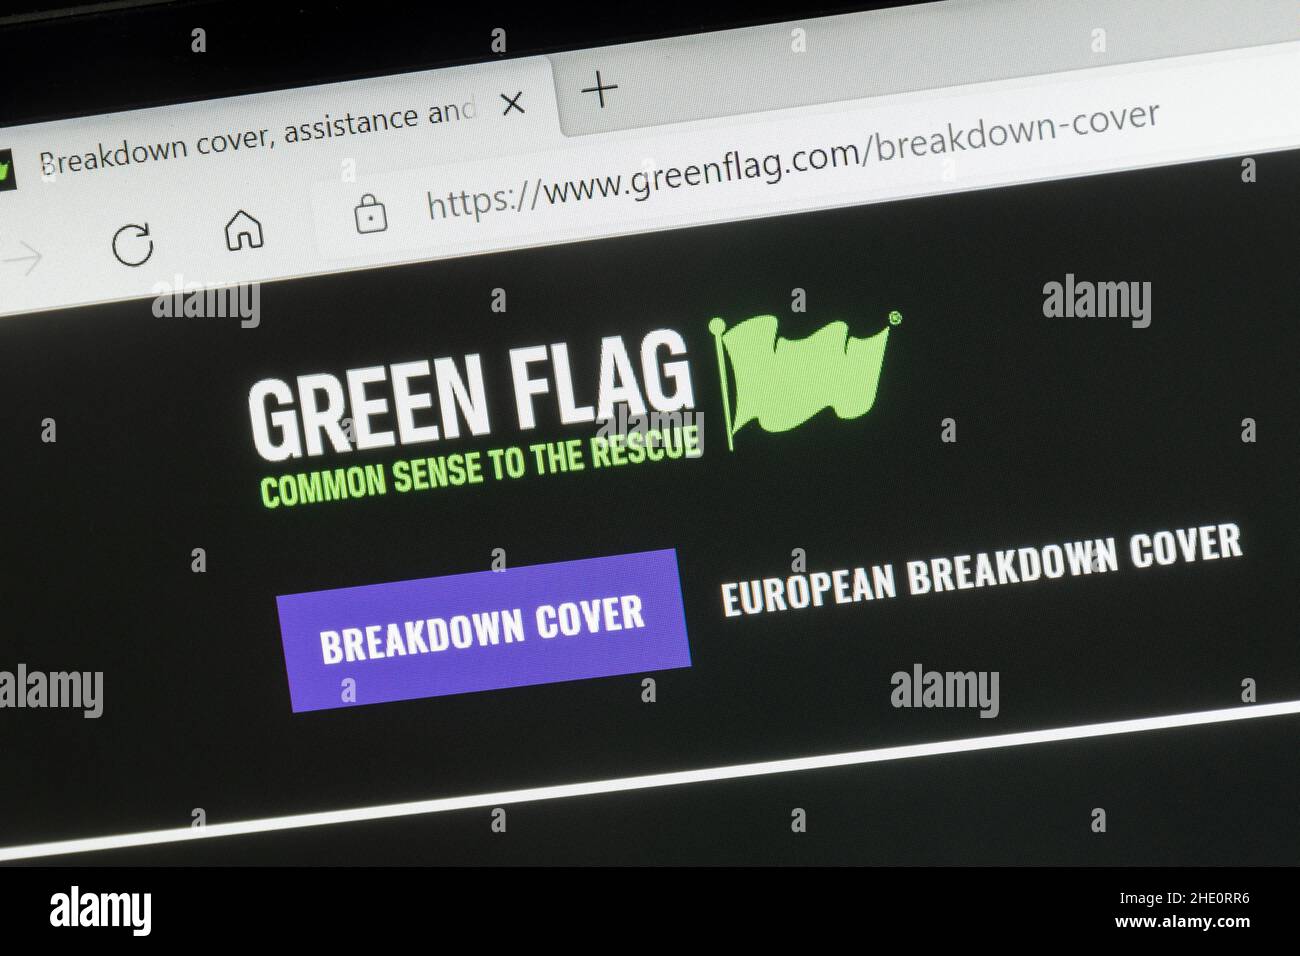 Copertura guasti veicolo con bandiera verde, sito Web aziendale su un computer portatile, Regno Unito Foto Stock